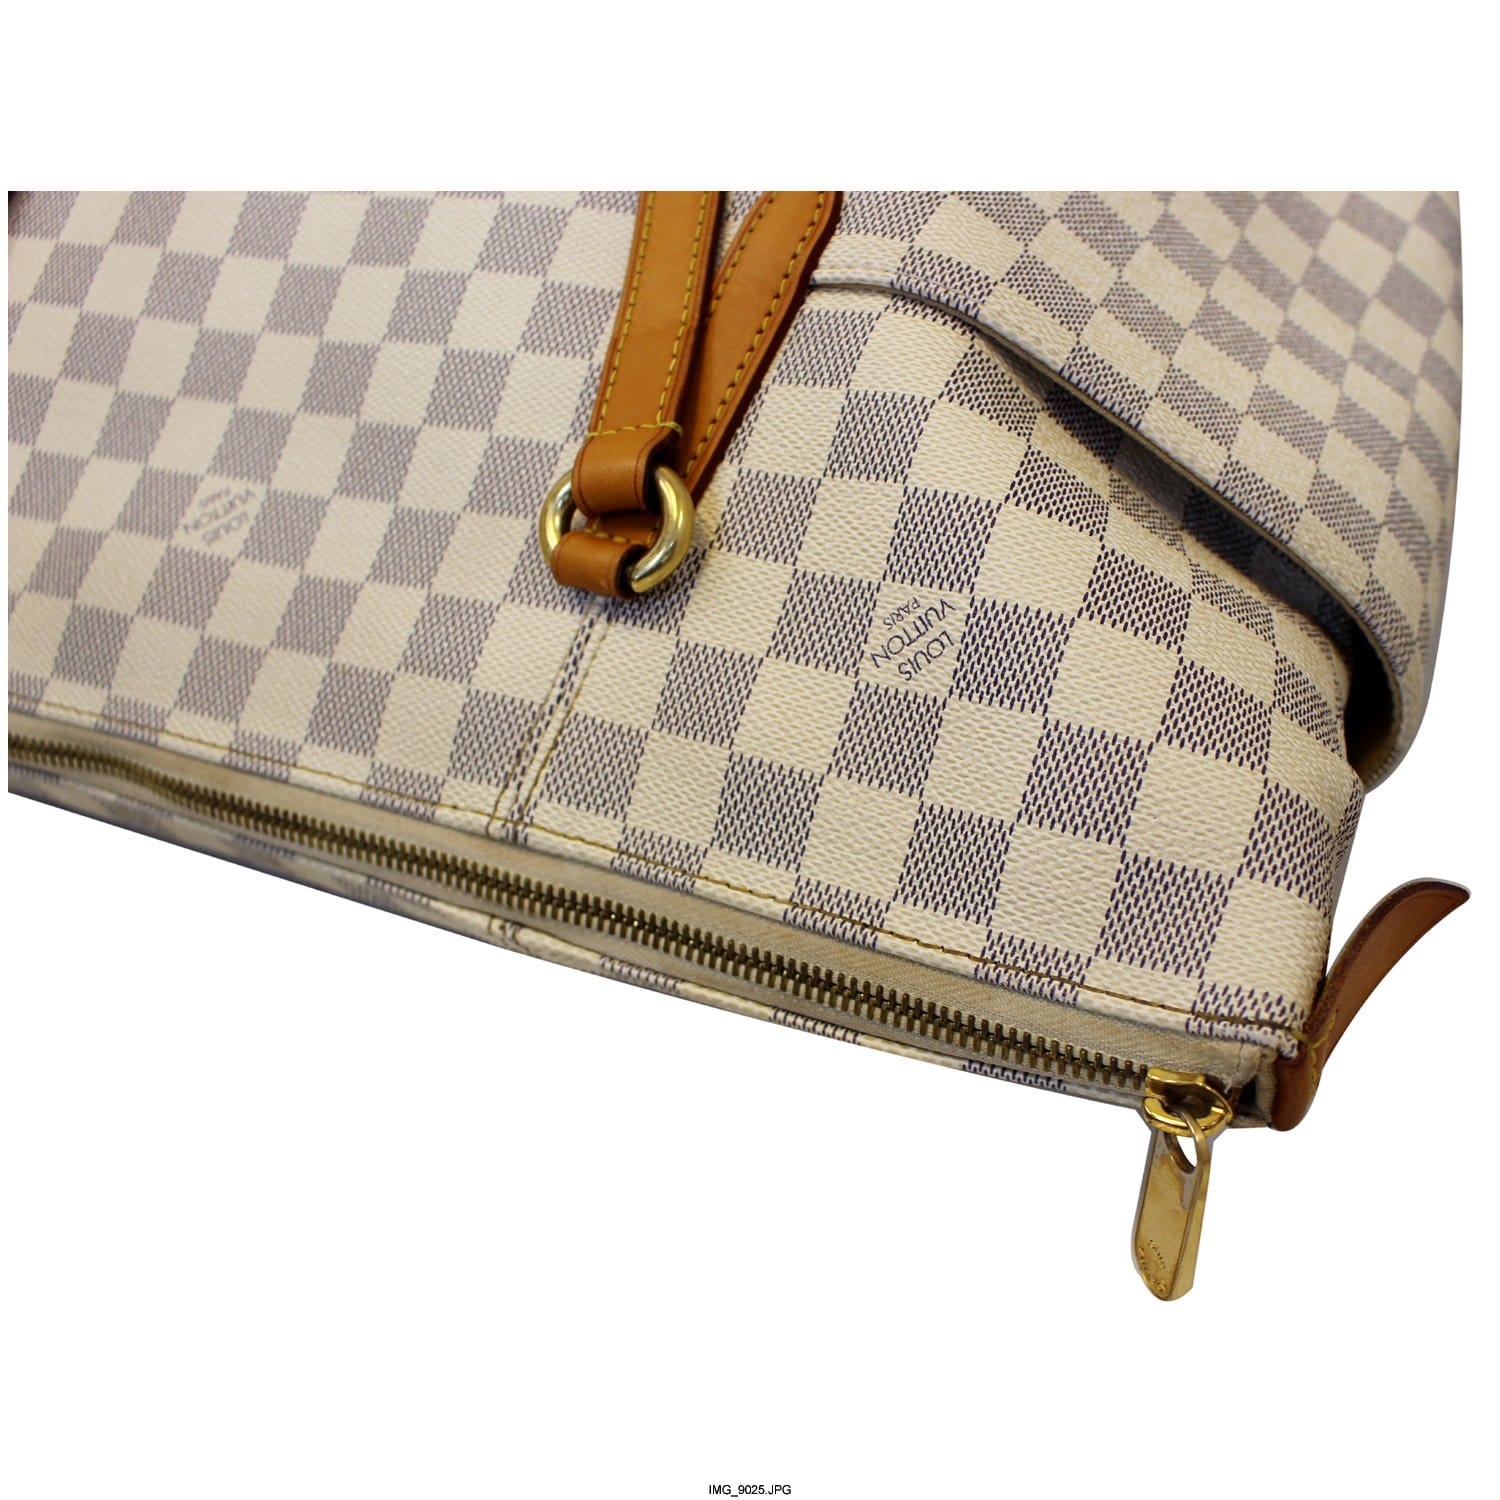 Louis Vuitton Damier Azur Noé GM - Neutrals Bucket Bags, Handbags -  LOU799342